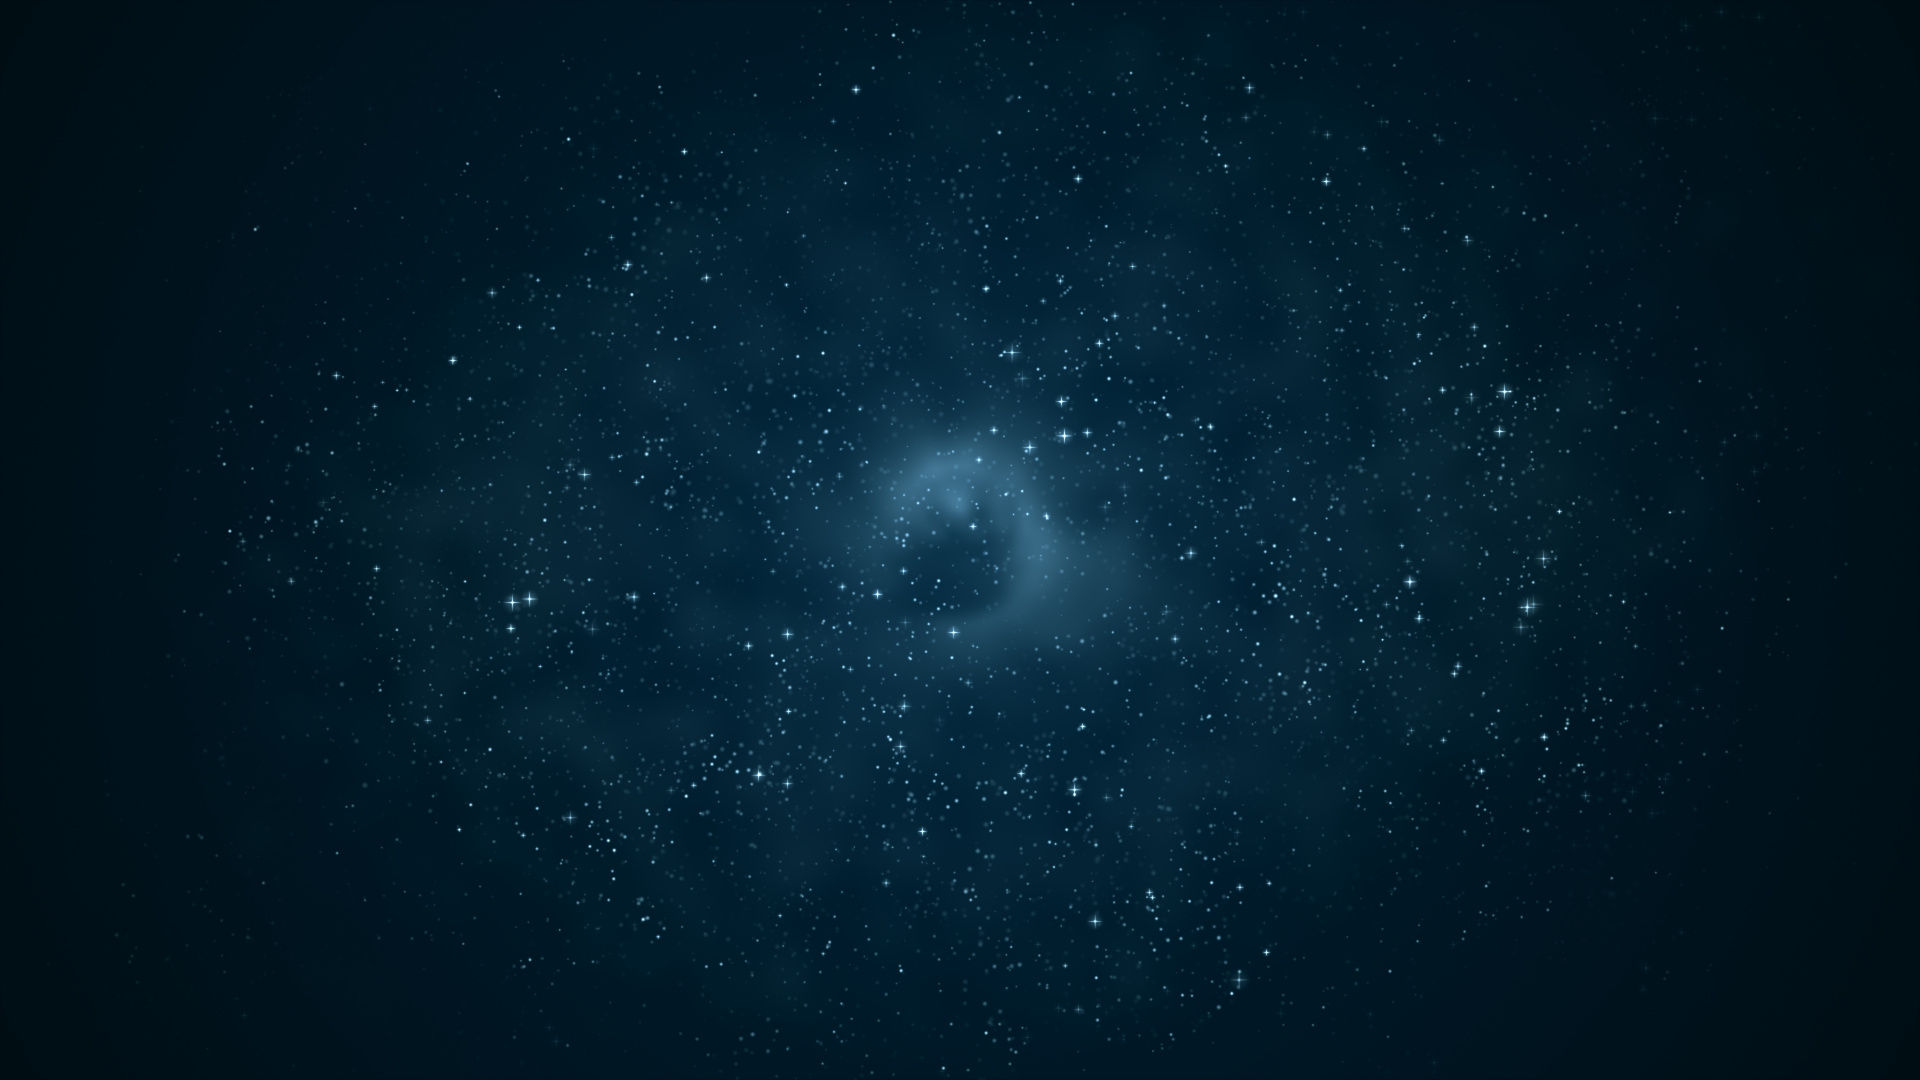 Cielo Estrellado Sobre la Noche Estrellada. Wallpaper in 1920x1080 Resolution